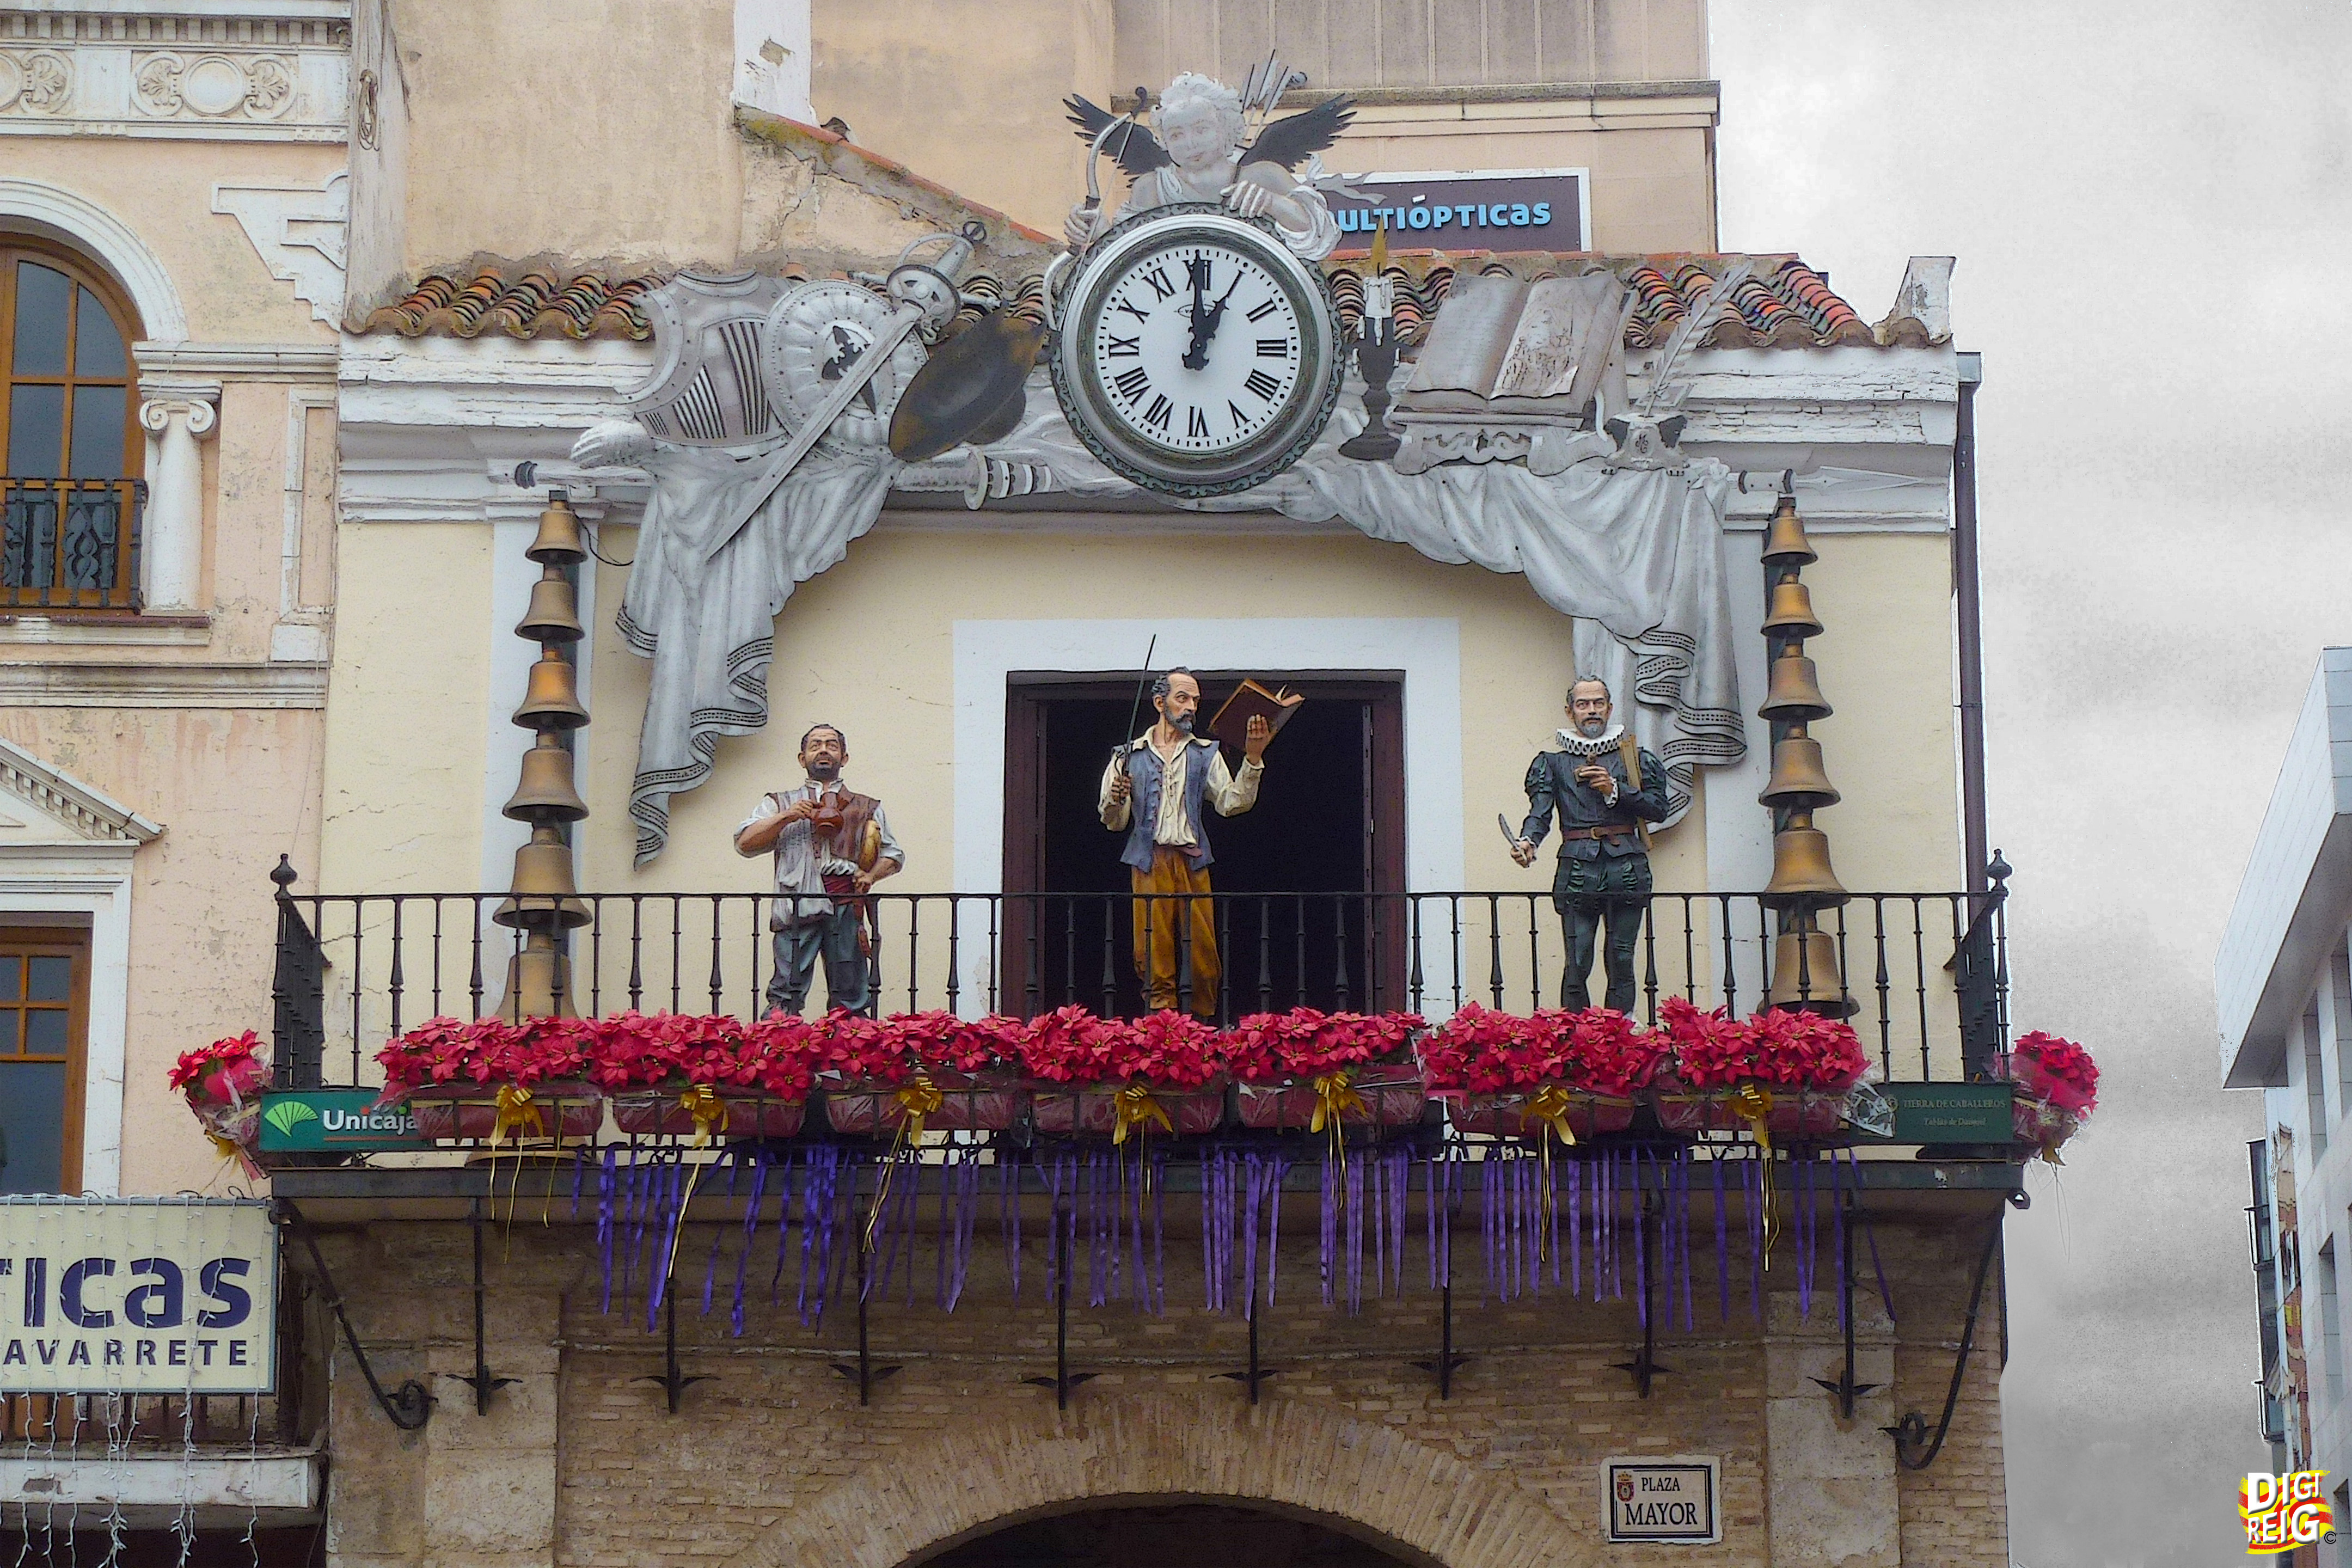 Foto: El Reloj Carillón dando la hora con los personajes: Cervantes, Quijote y Sancho Panza. - Ciudad Real (Castilla La Mancha), España